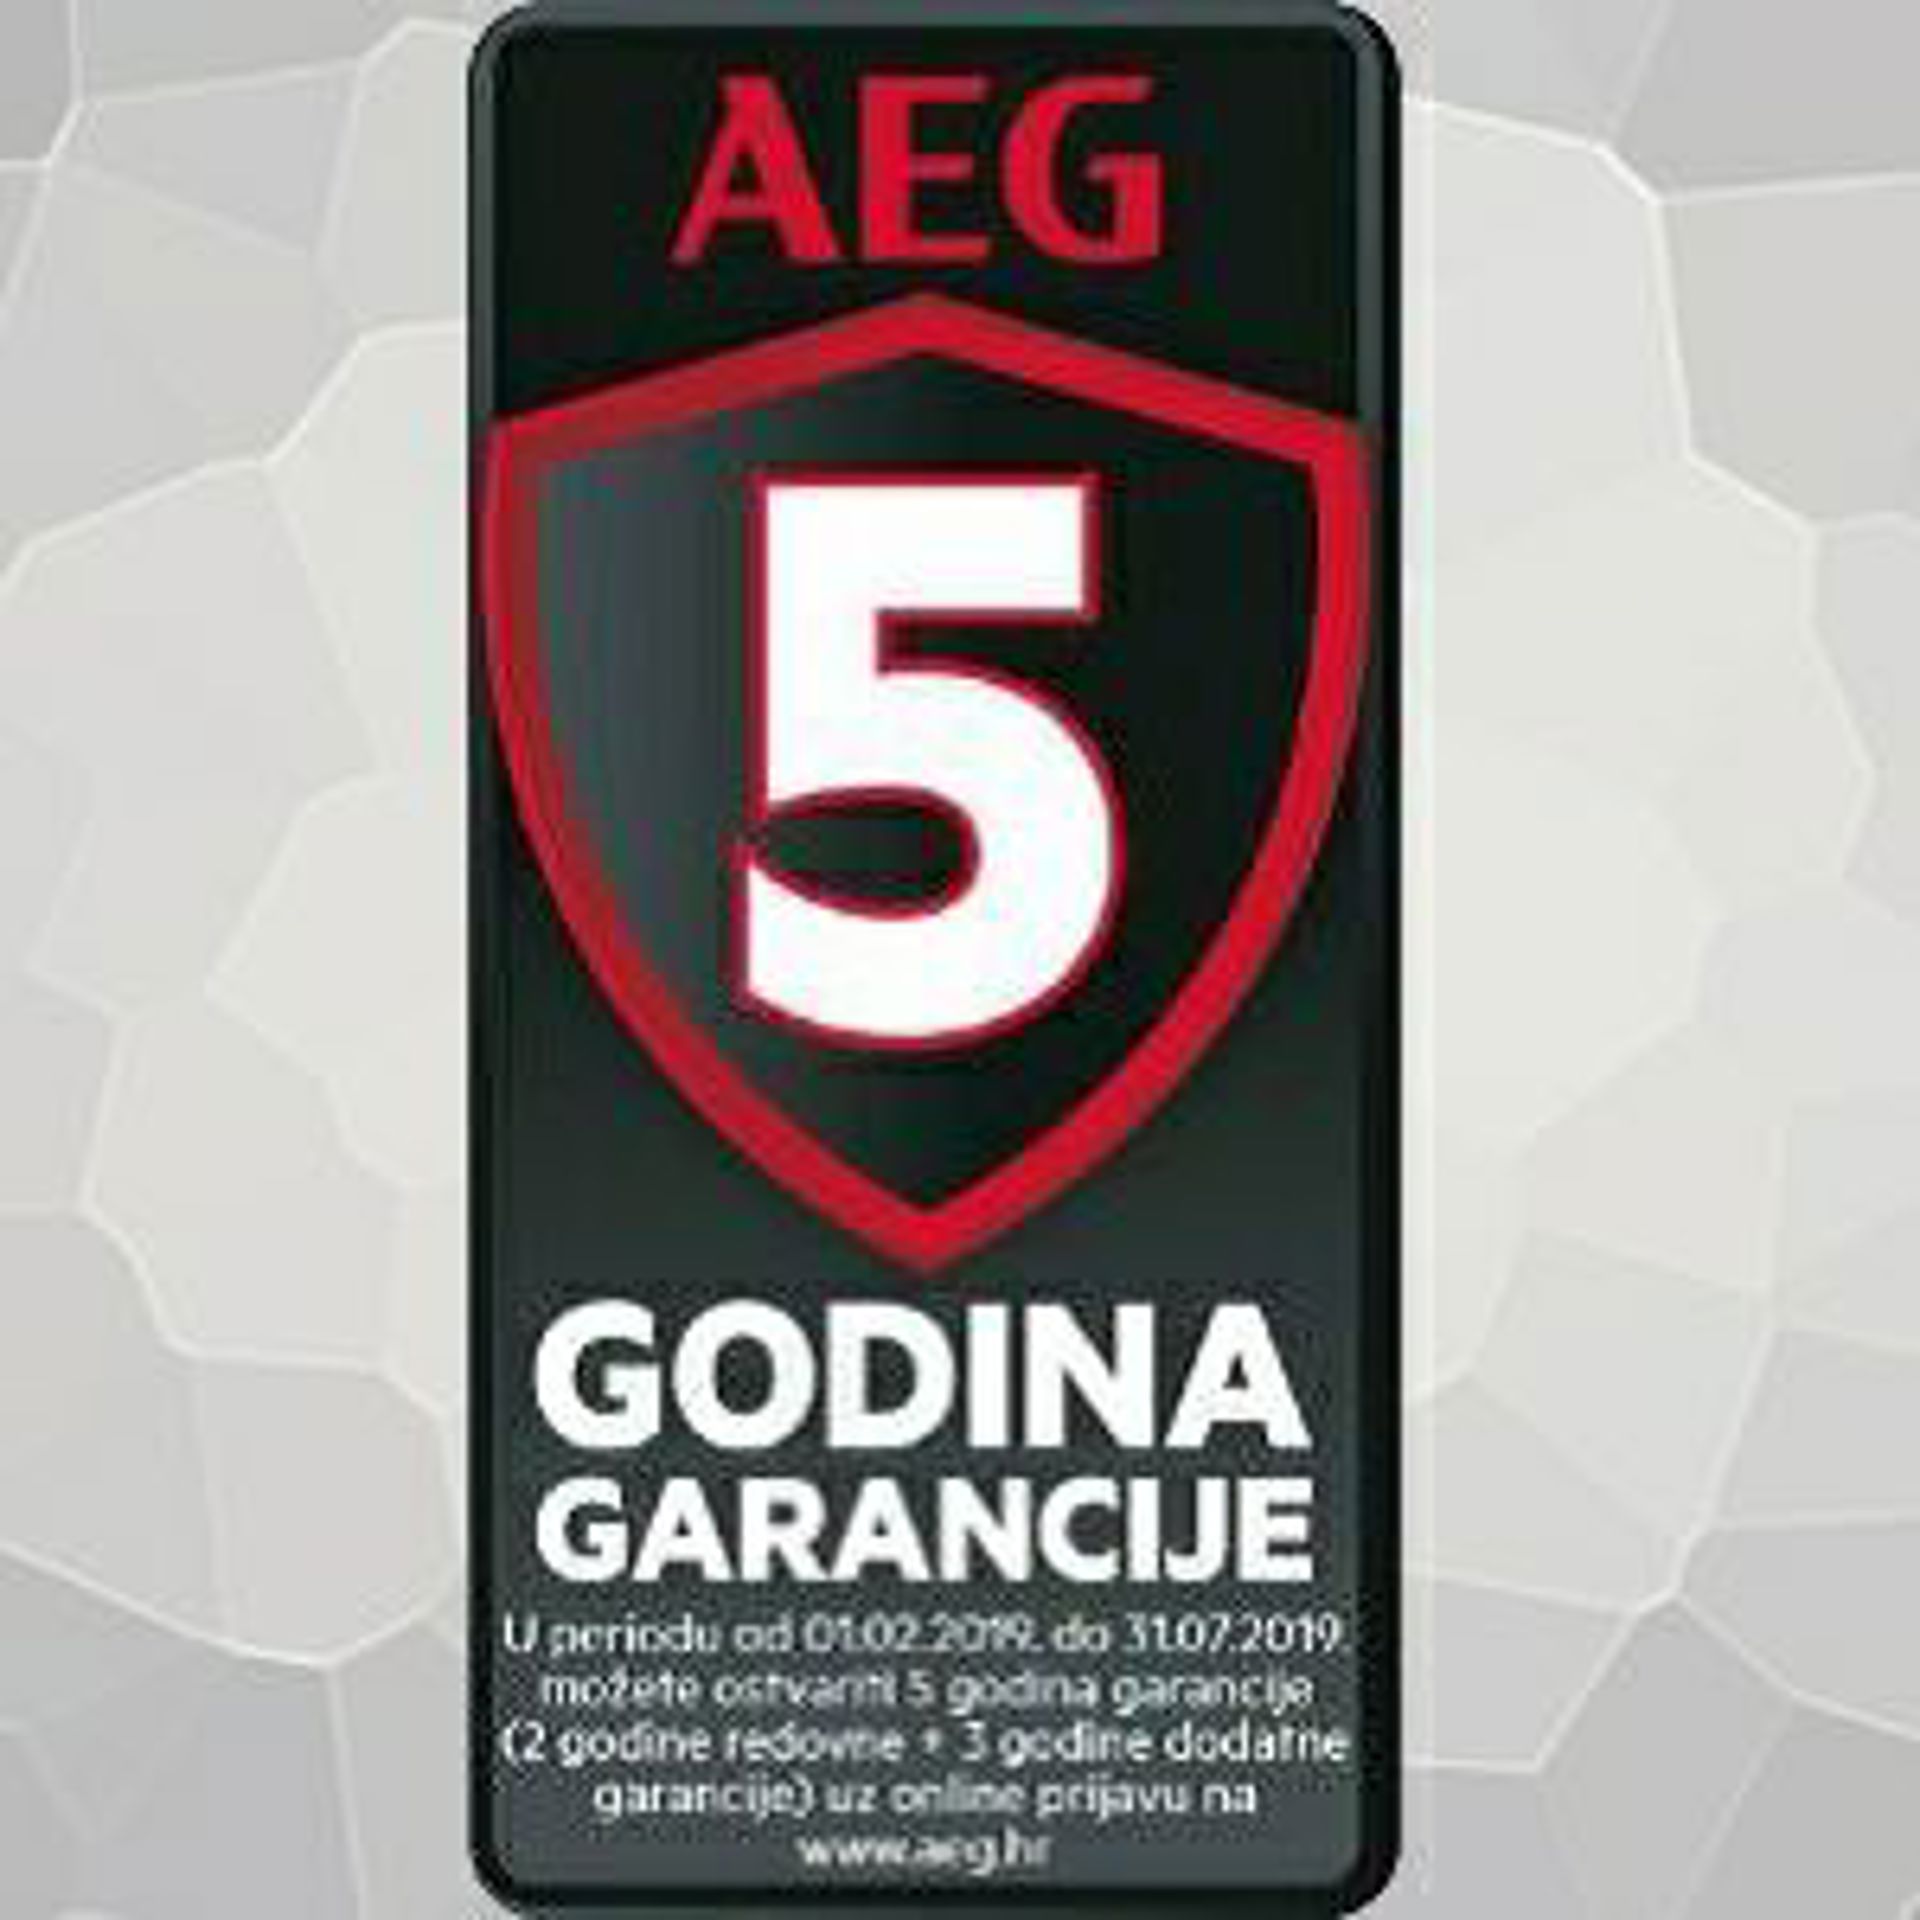 AEG aparati bijele tehnike sa 5 godina garancije